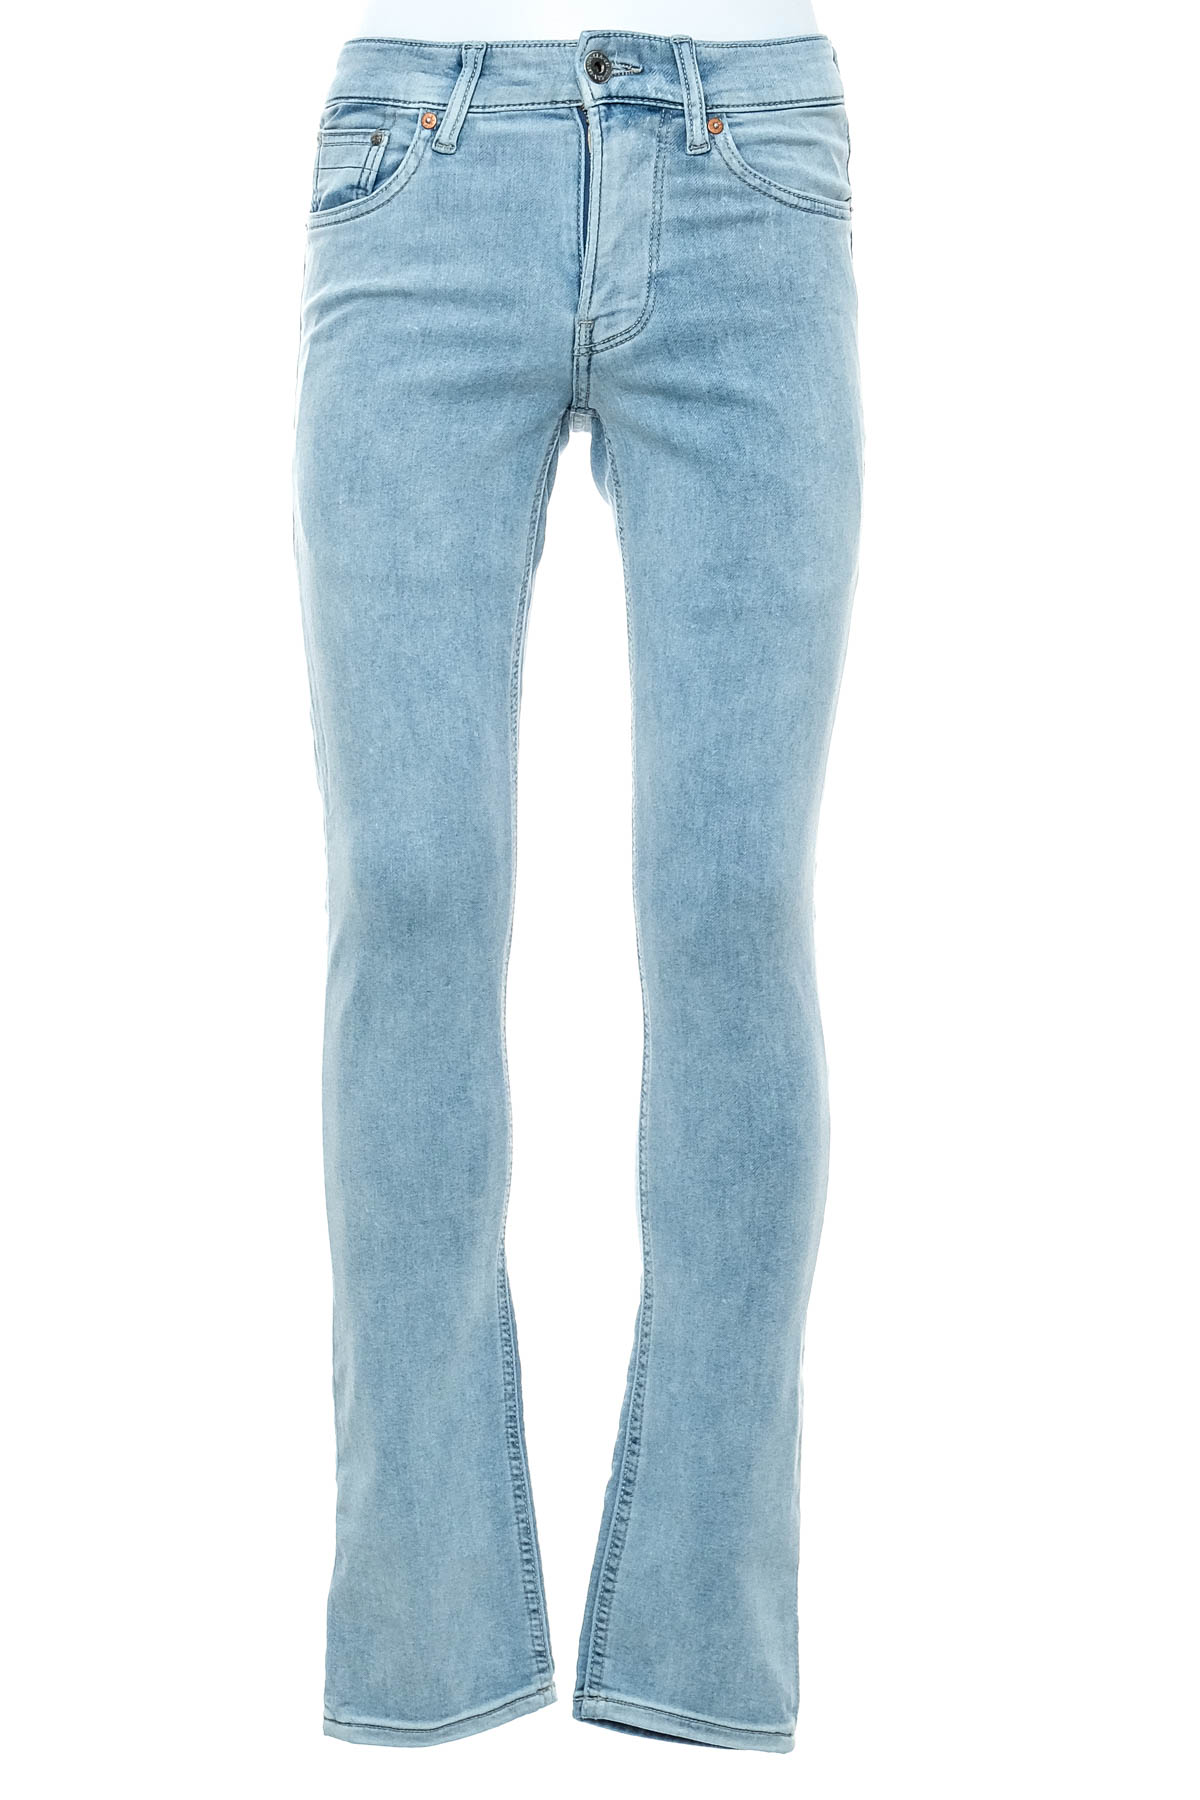 Men's jeans - C&A - 0